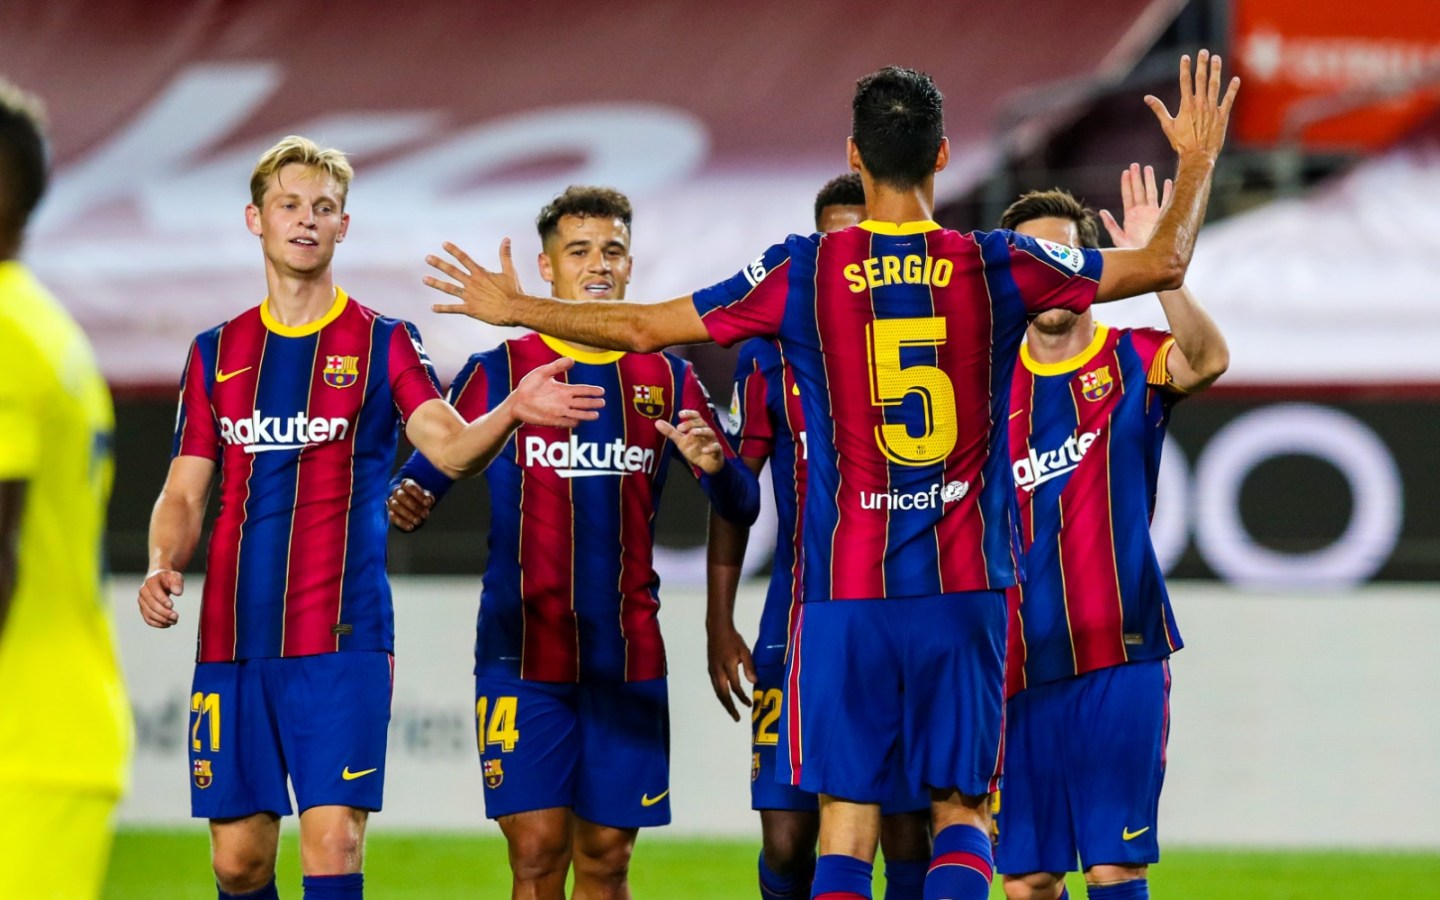 La dette d’un milliard d’euros de Barcelone met en doute la crédibilité du football